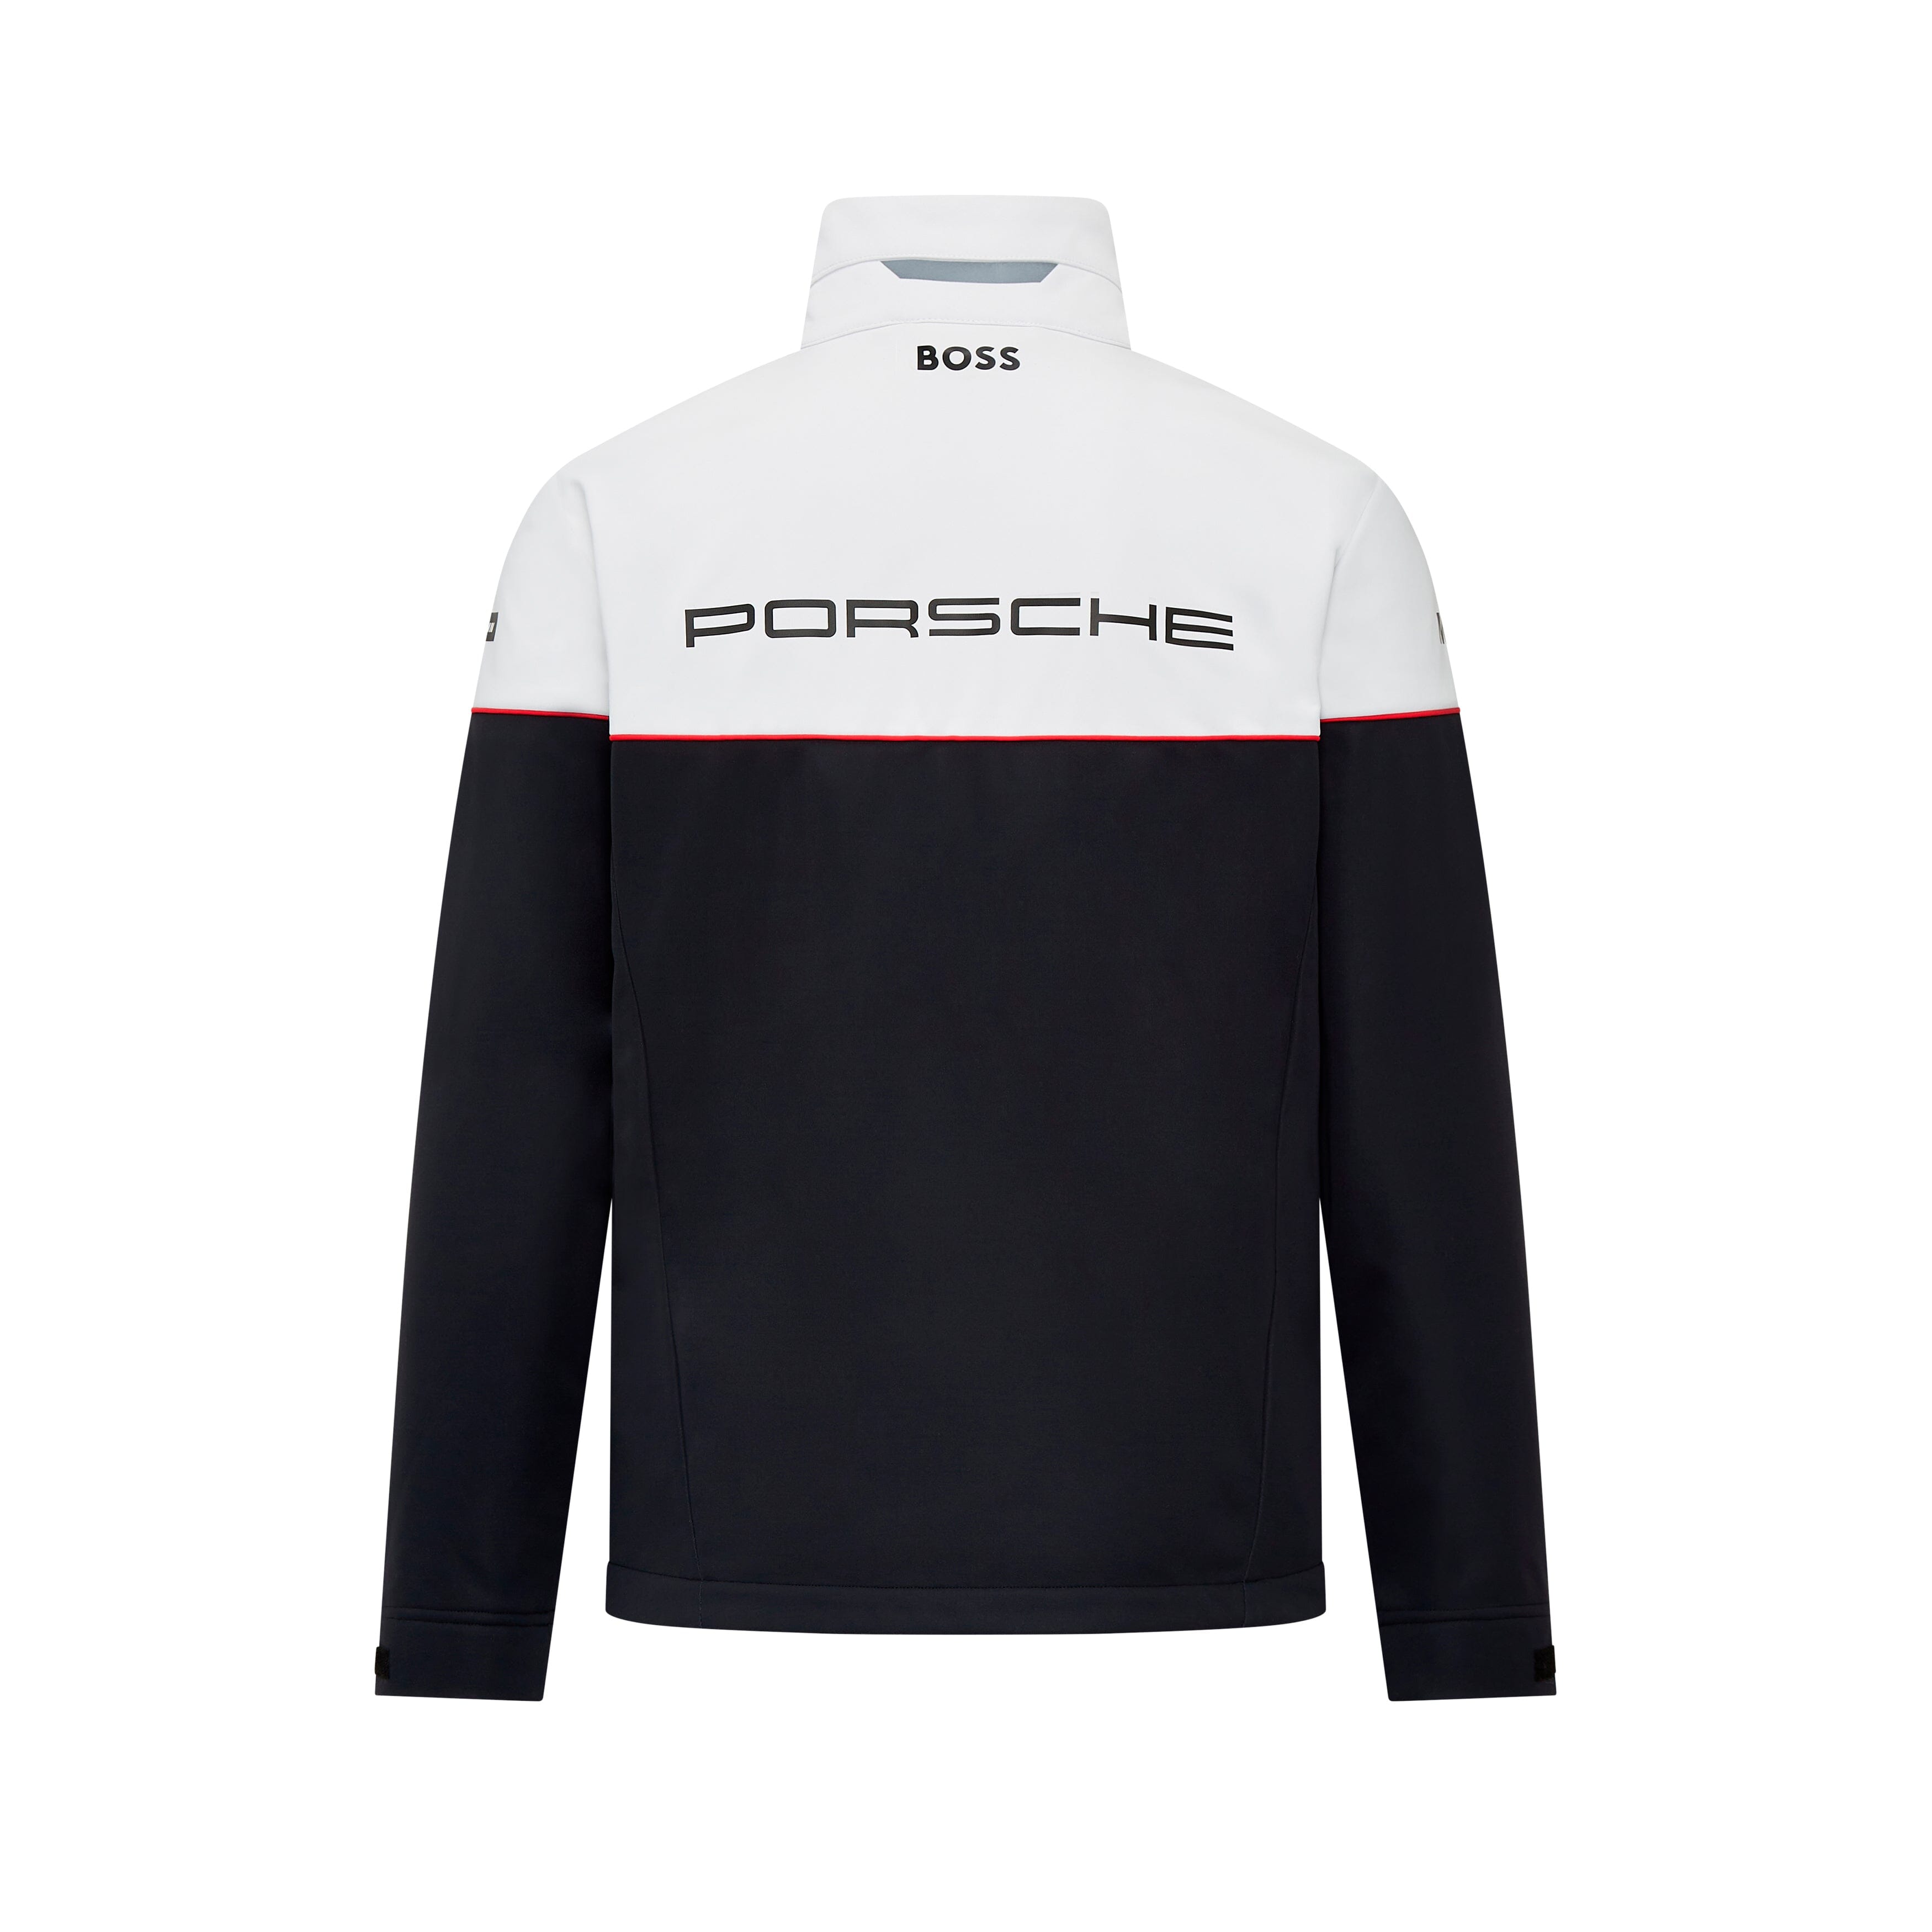 Porsche Motorsport Team Men's Softshell Jacket